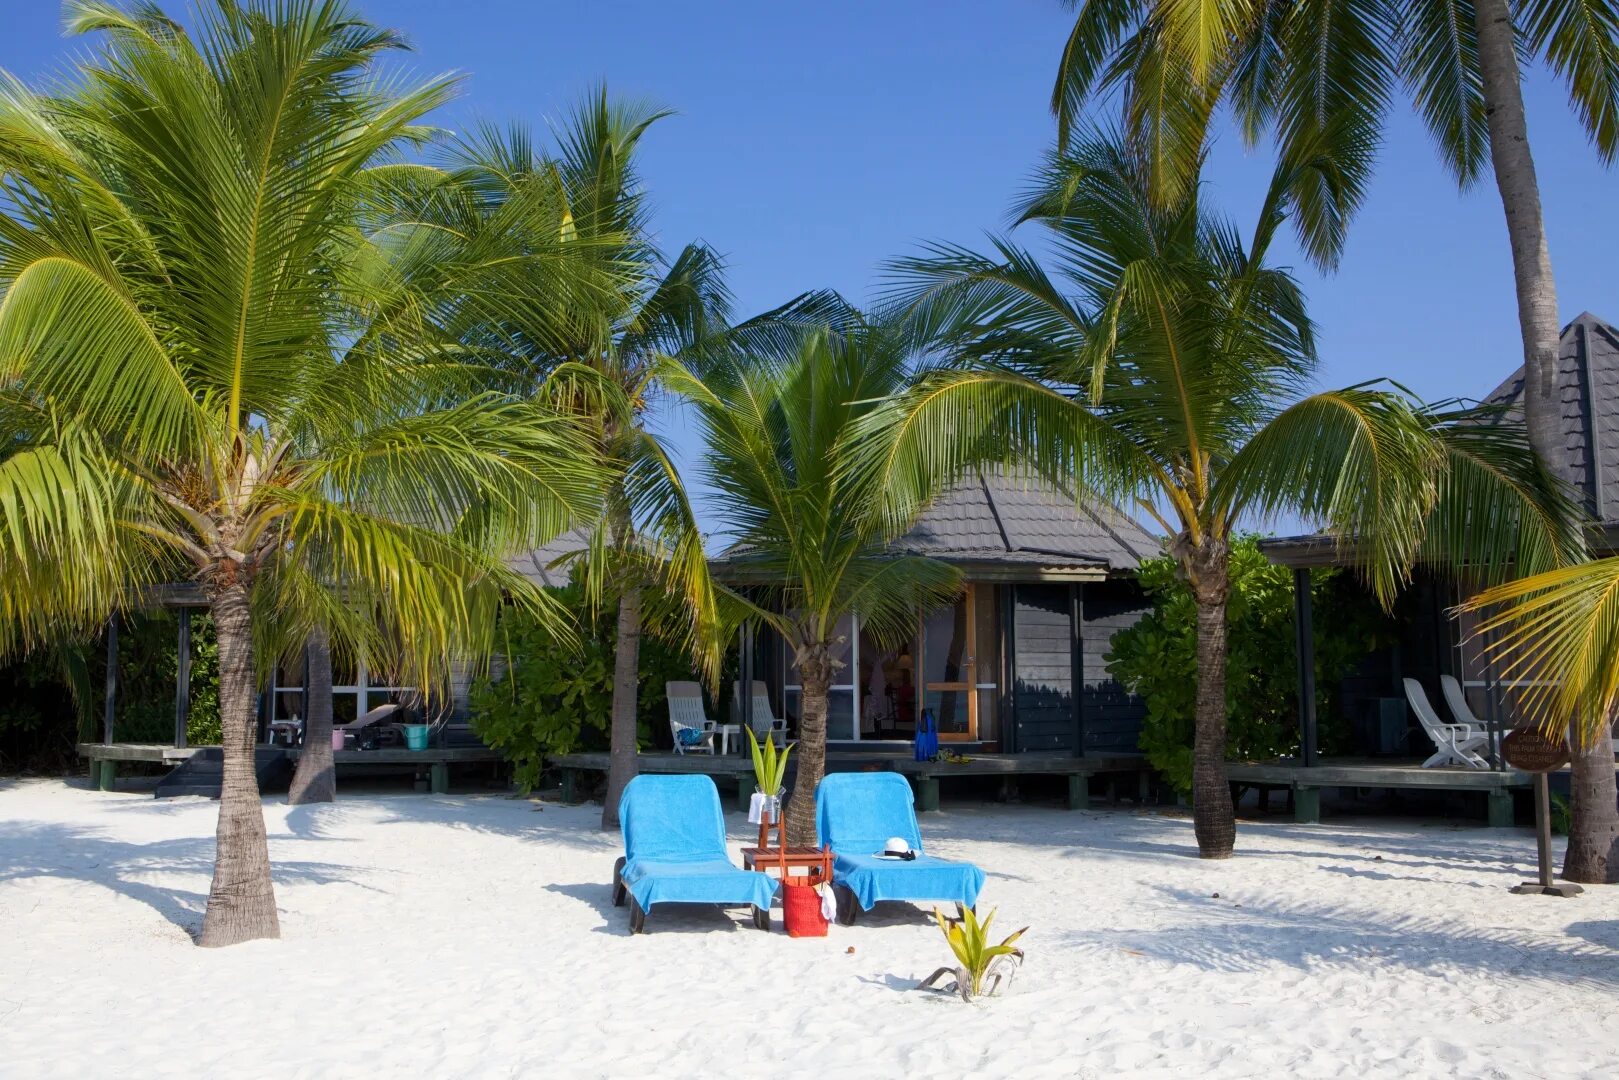 Island beach 2. Остров Kuredu Мальдивы. Куреду Бич вилла. Kuredu Island Resort 4. Отель Kuredu Island Resort & Spa.